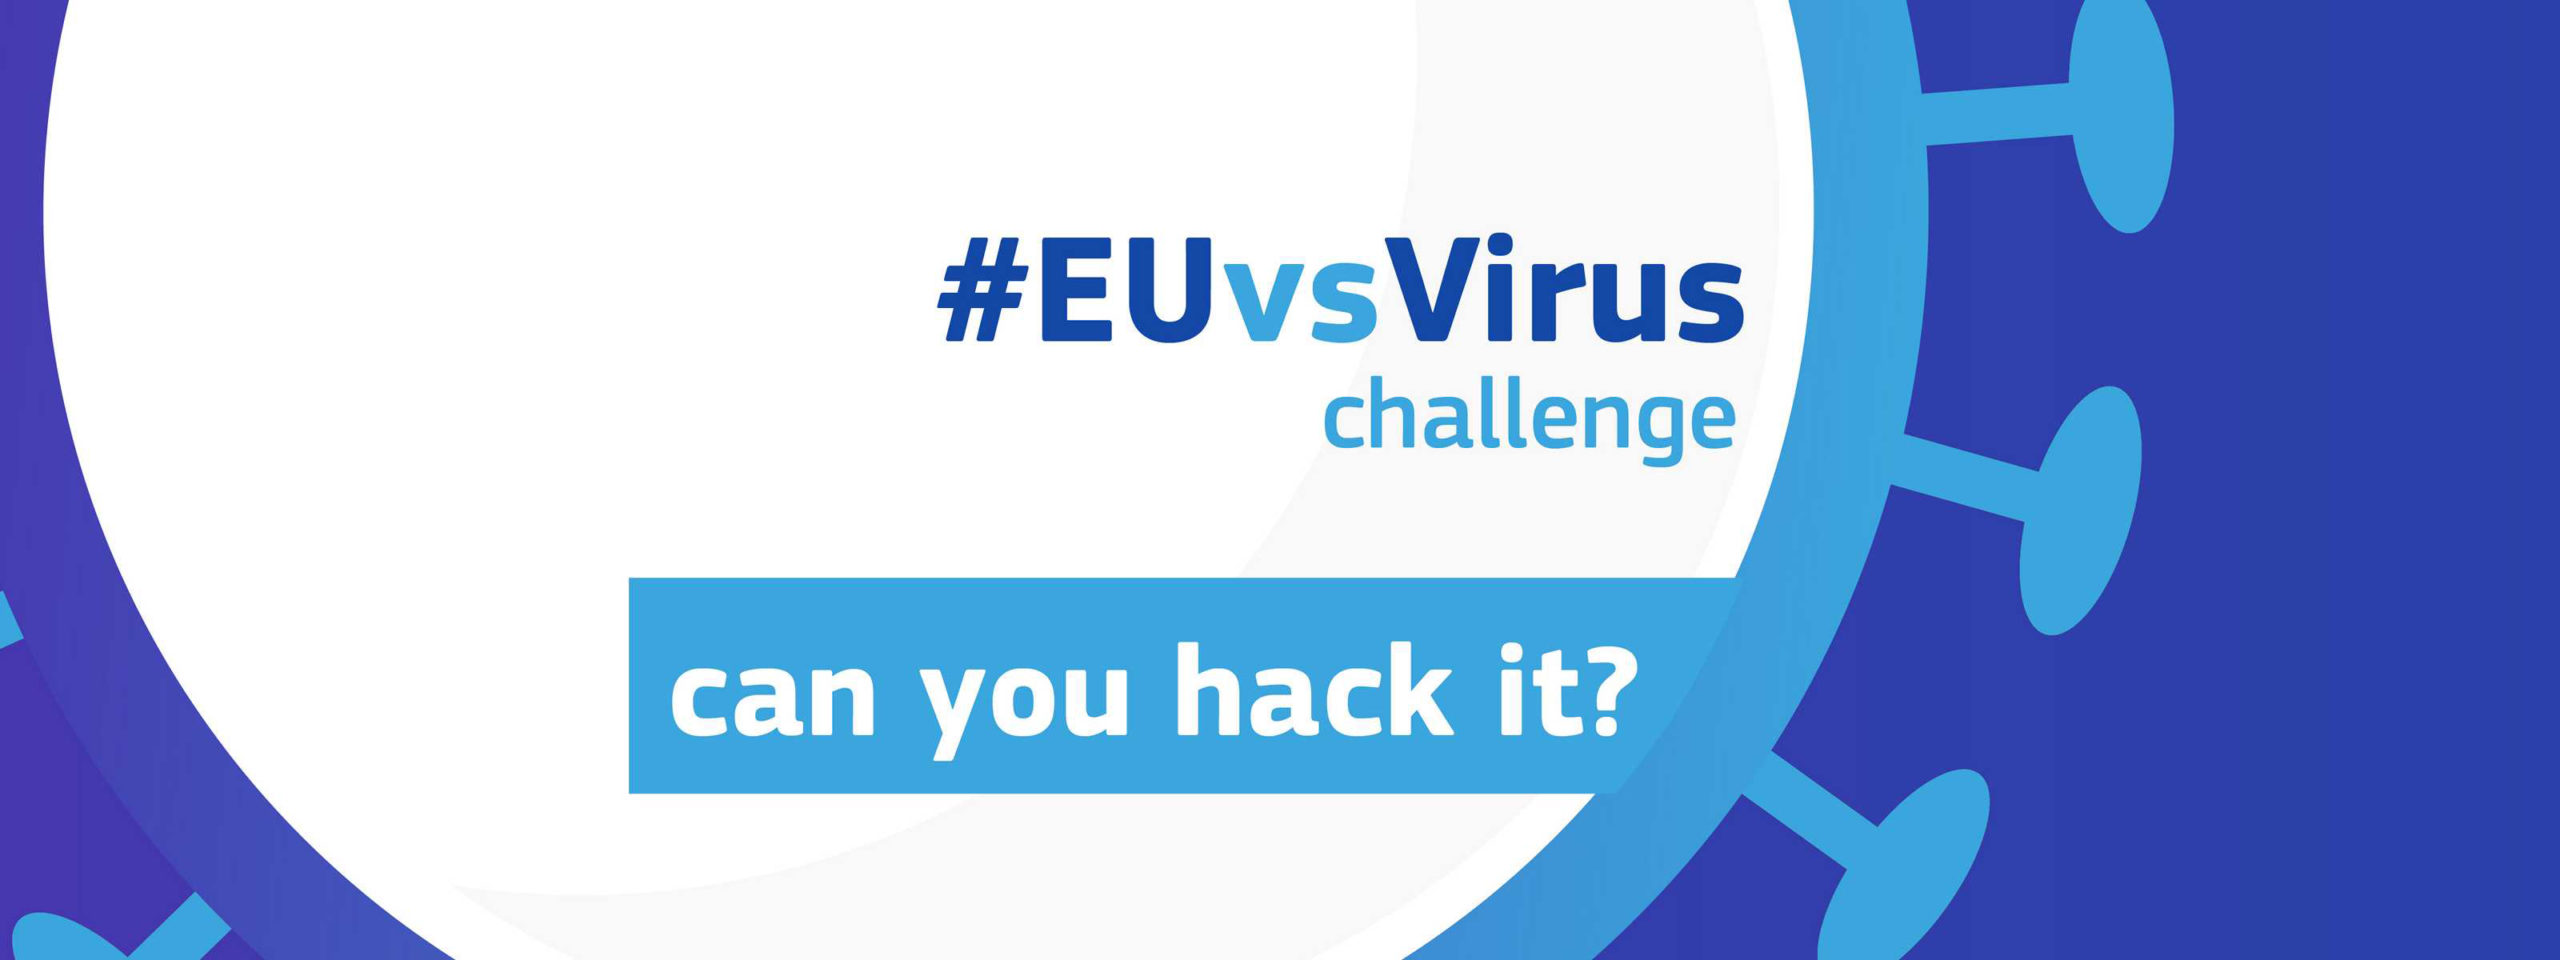 Bild mit schematischer Drstellung eines Virus und der Aufschrift #EUvsVirusVirus